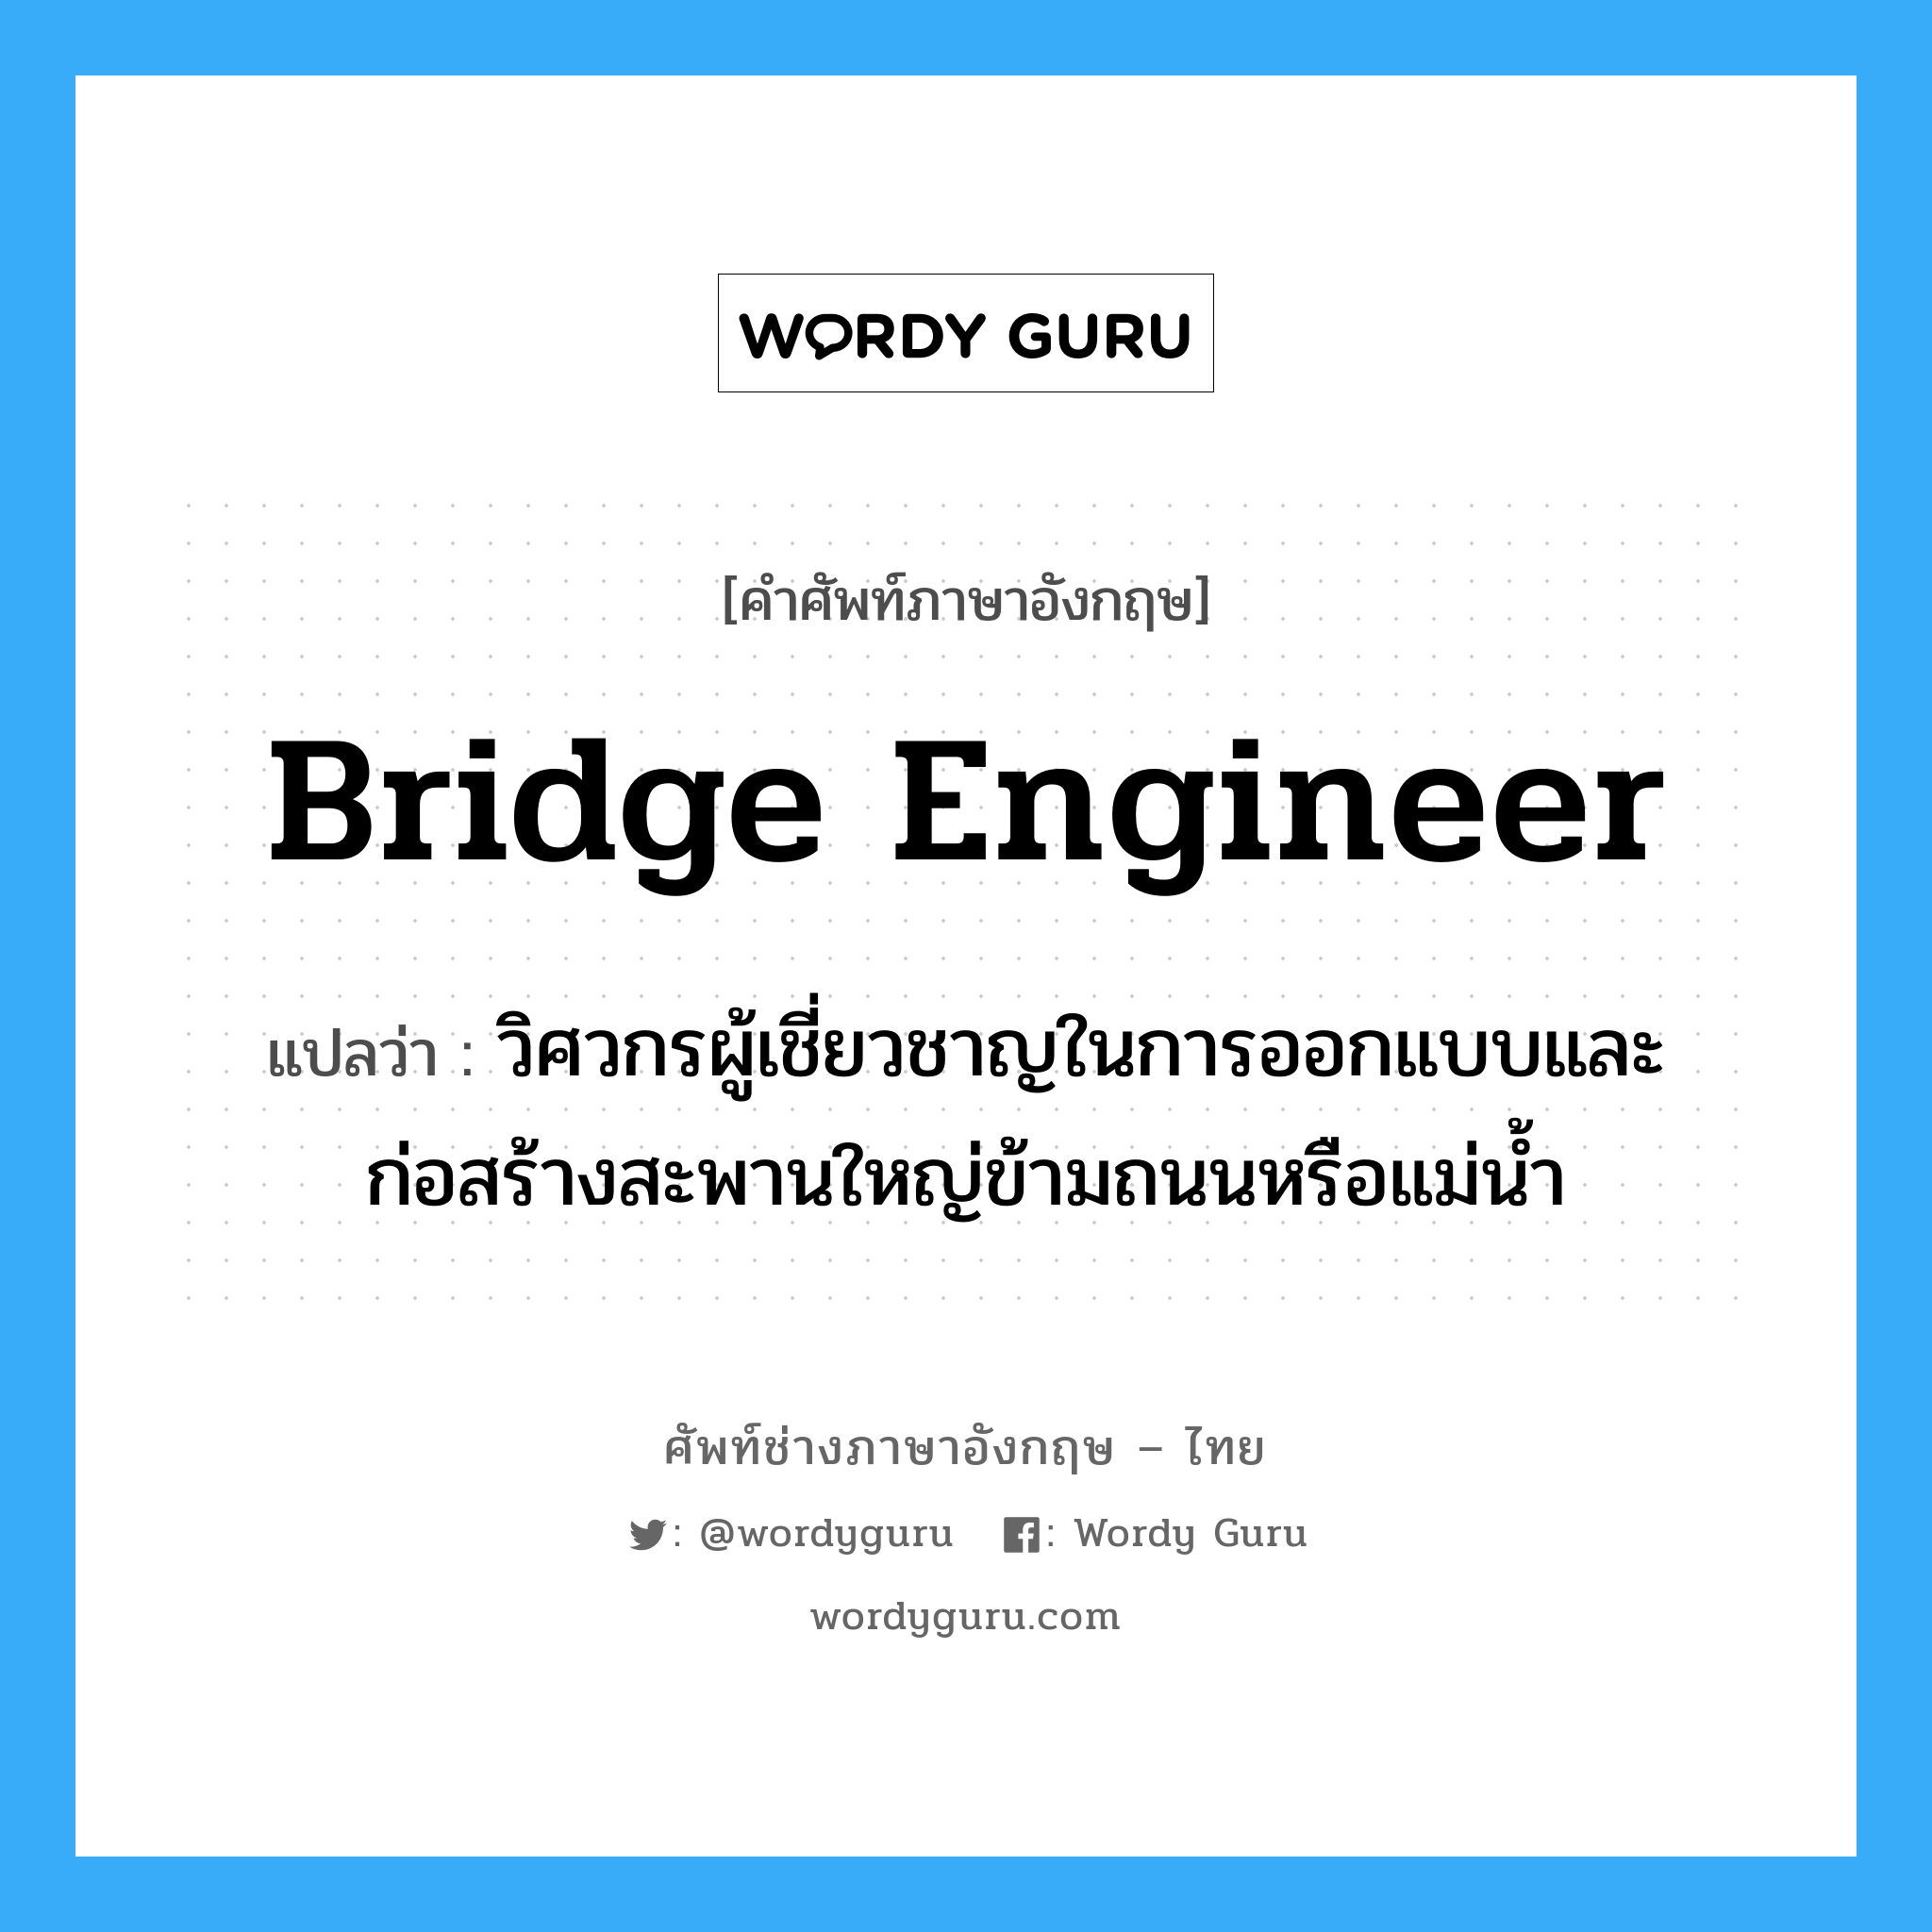 bridge engineer แปลว่า?, คำศัพท์ช่างภาษาอังกฤษ - ไทย bridge engineer คำศัพท์ภาษาอังกฤษ bridge engineer แปลว่า วิศวกรผู้เชี่ยวชาญในการออกแบบและก่อสร้างสะพานใหญ่ข้ามถนนหรือแม่น้ำ